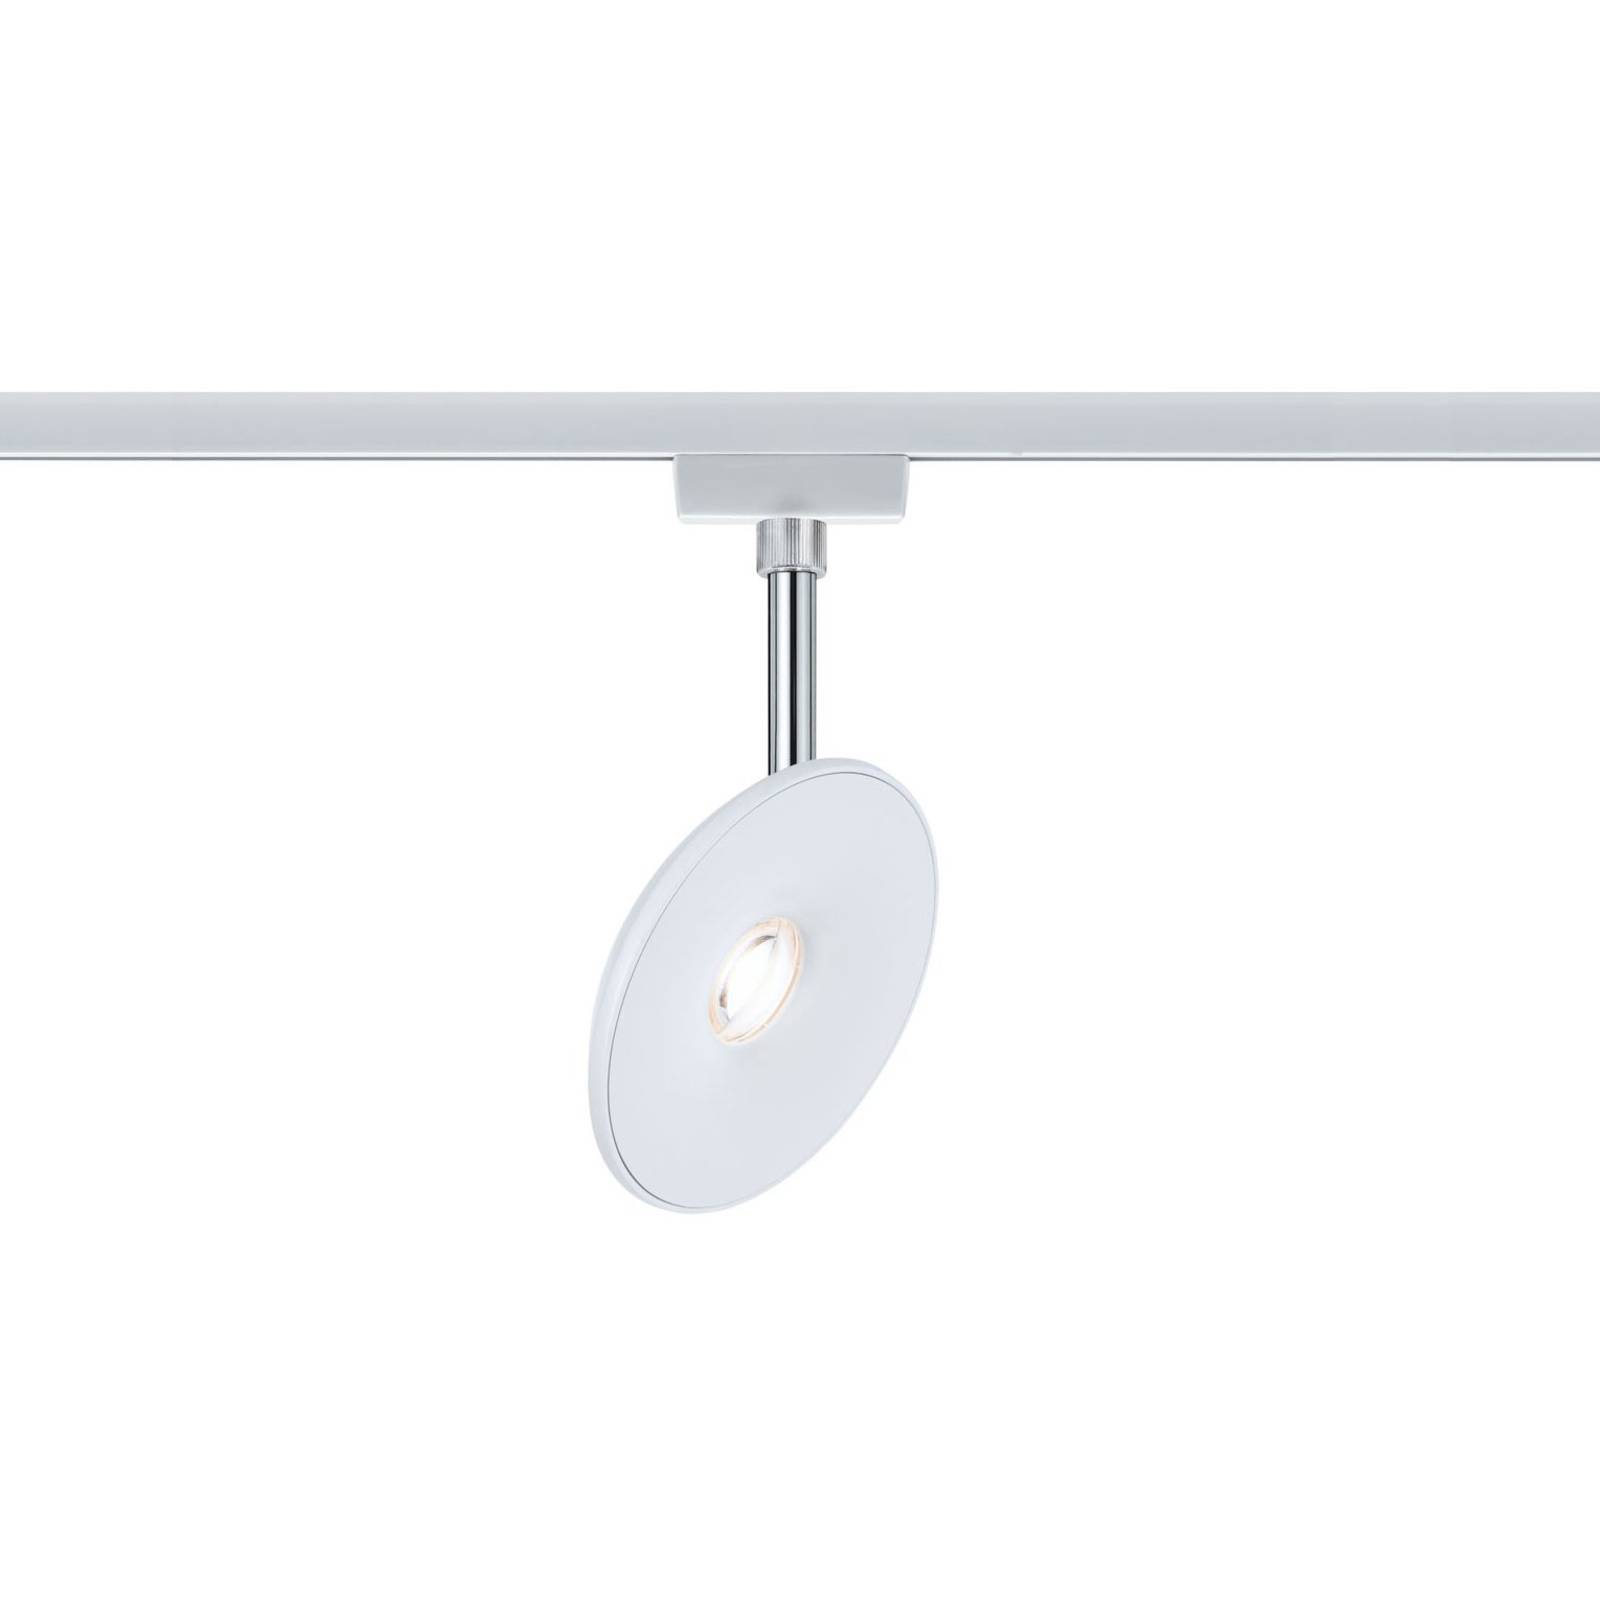 Paulmann URail Sphere LED spot, white/chrome